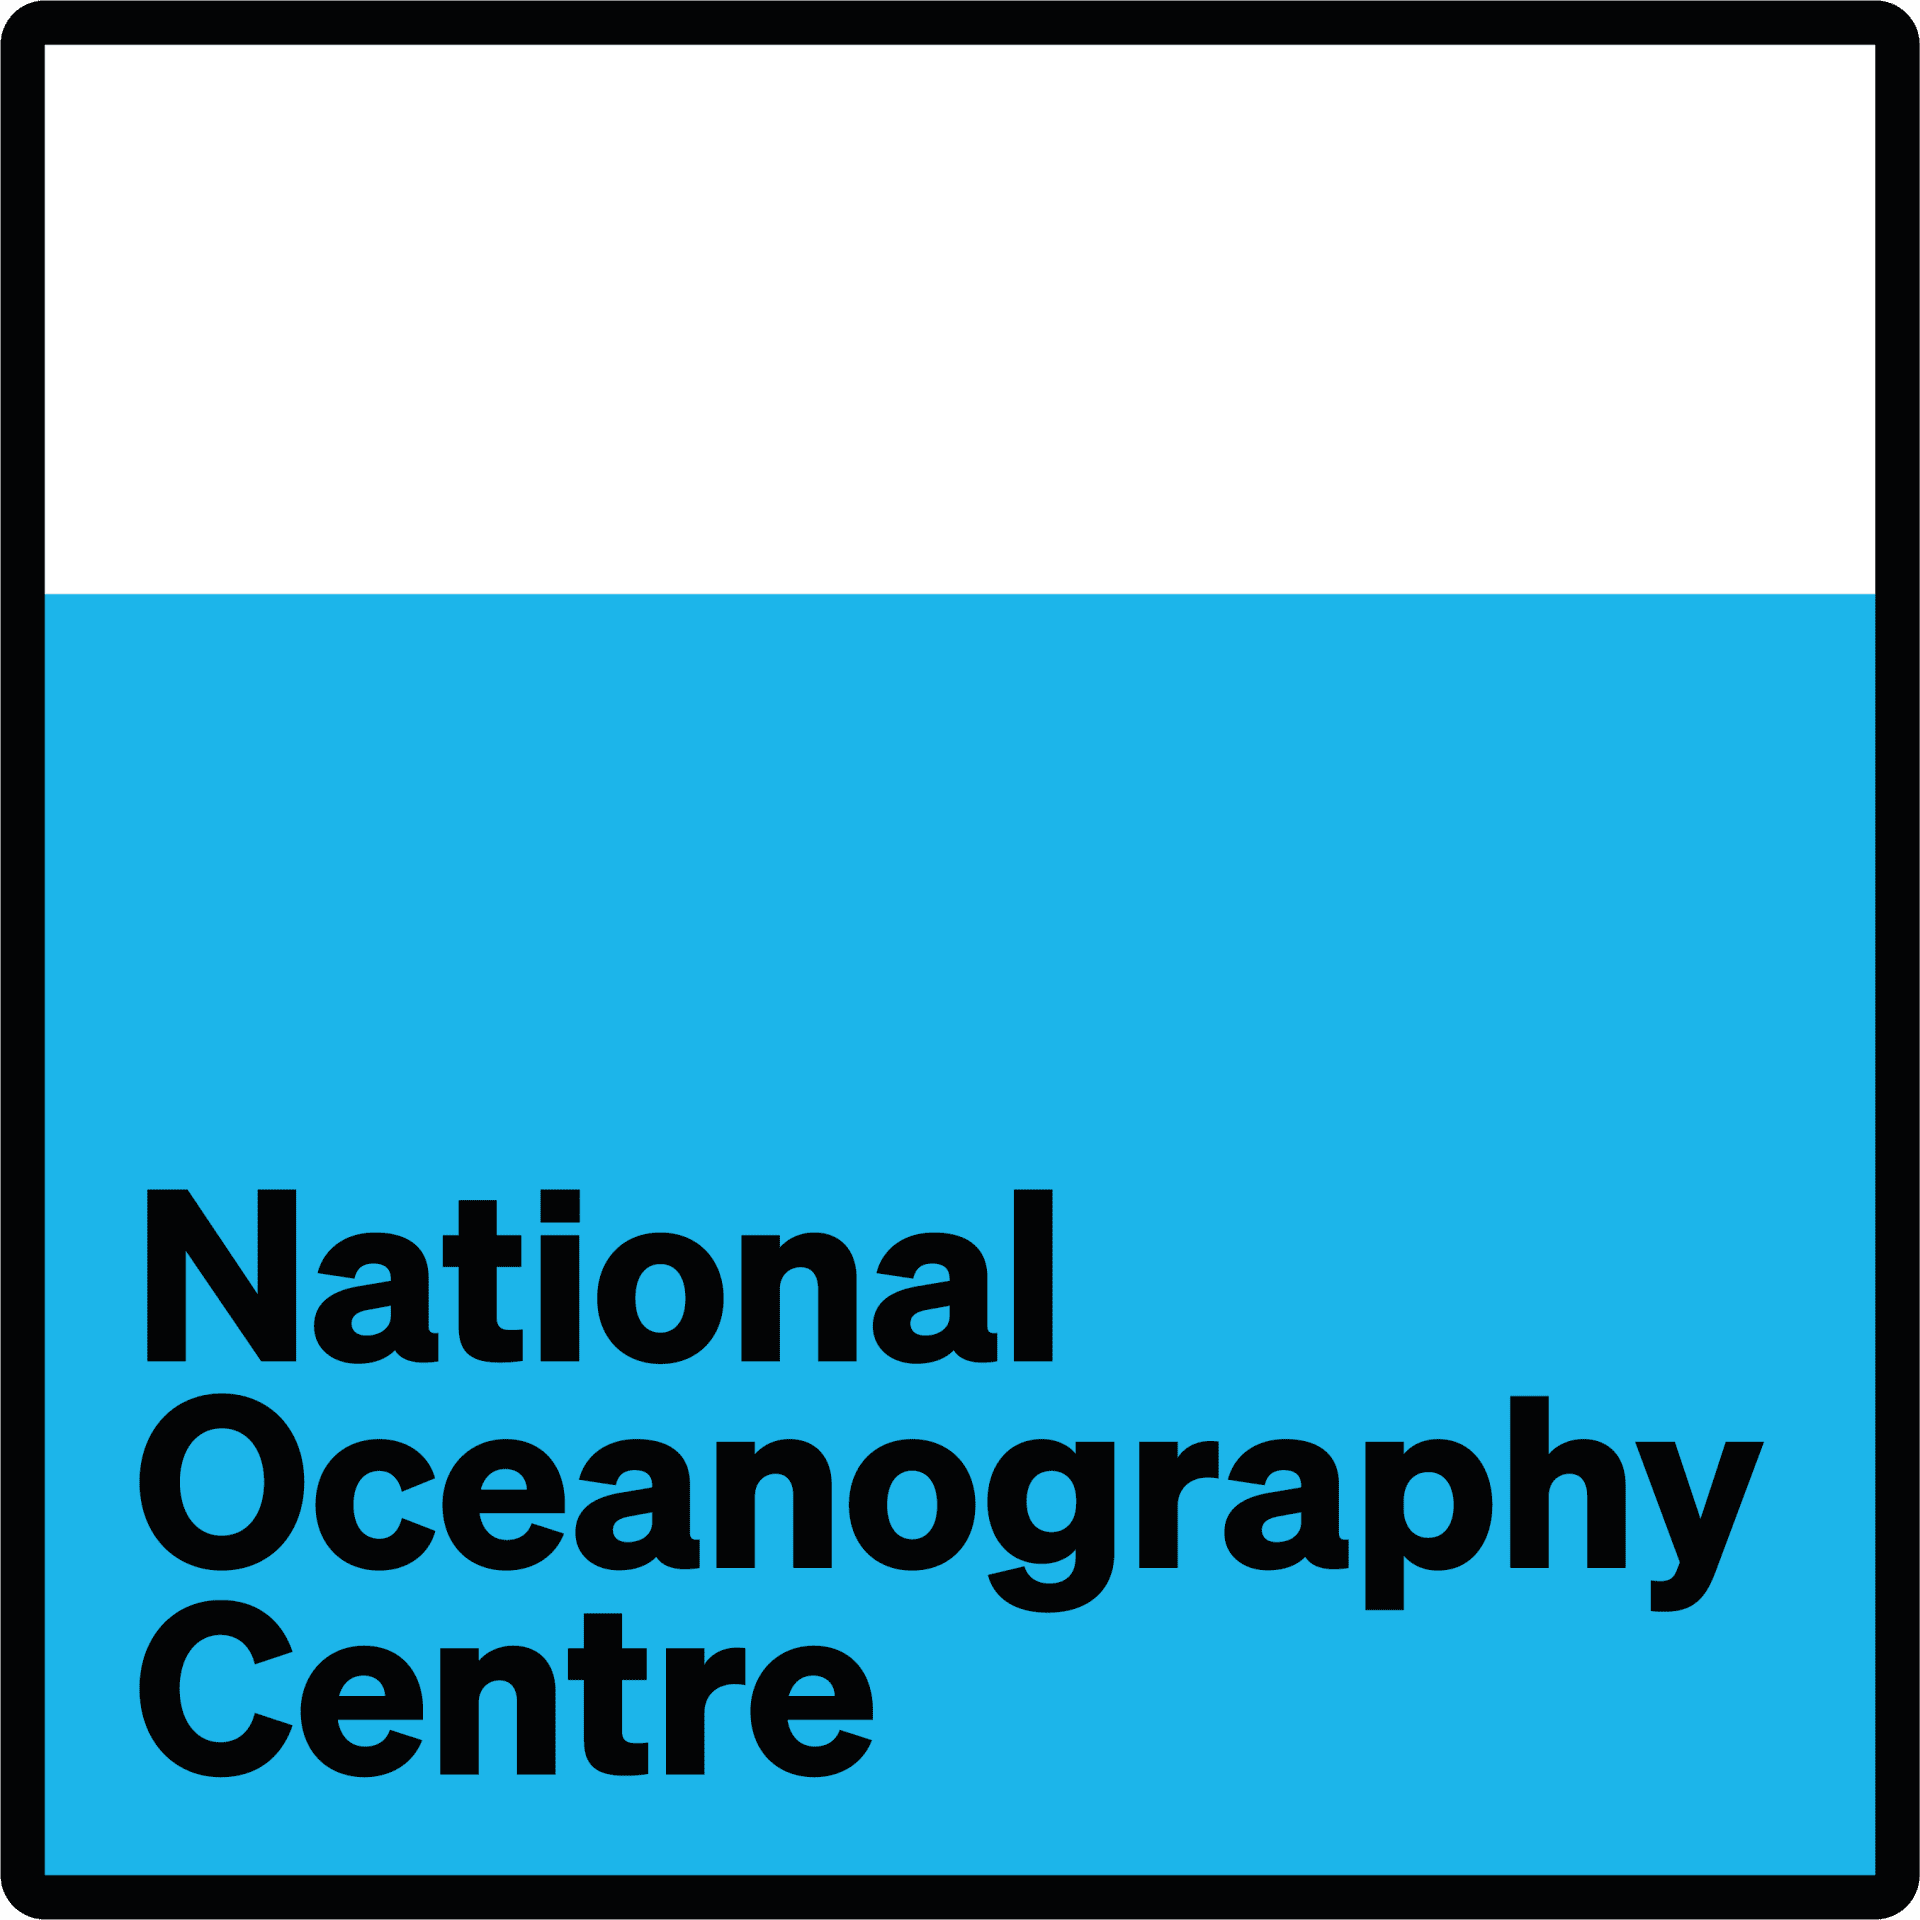 National Oceanography Centre LOGO